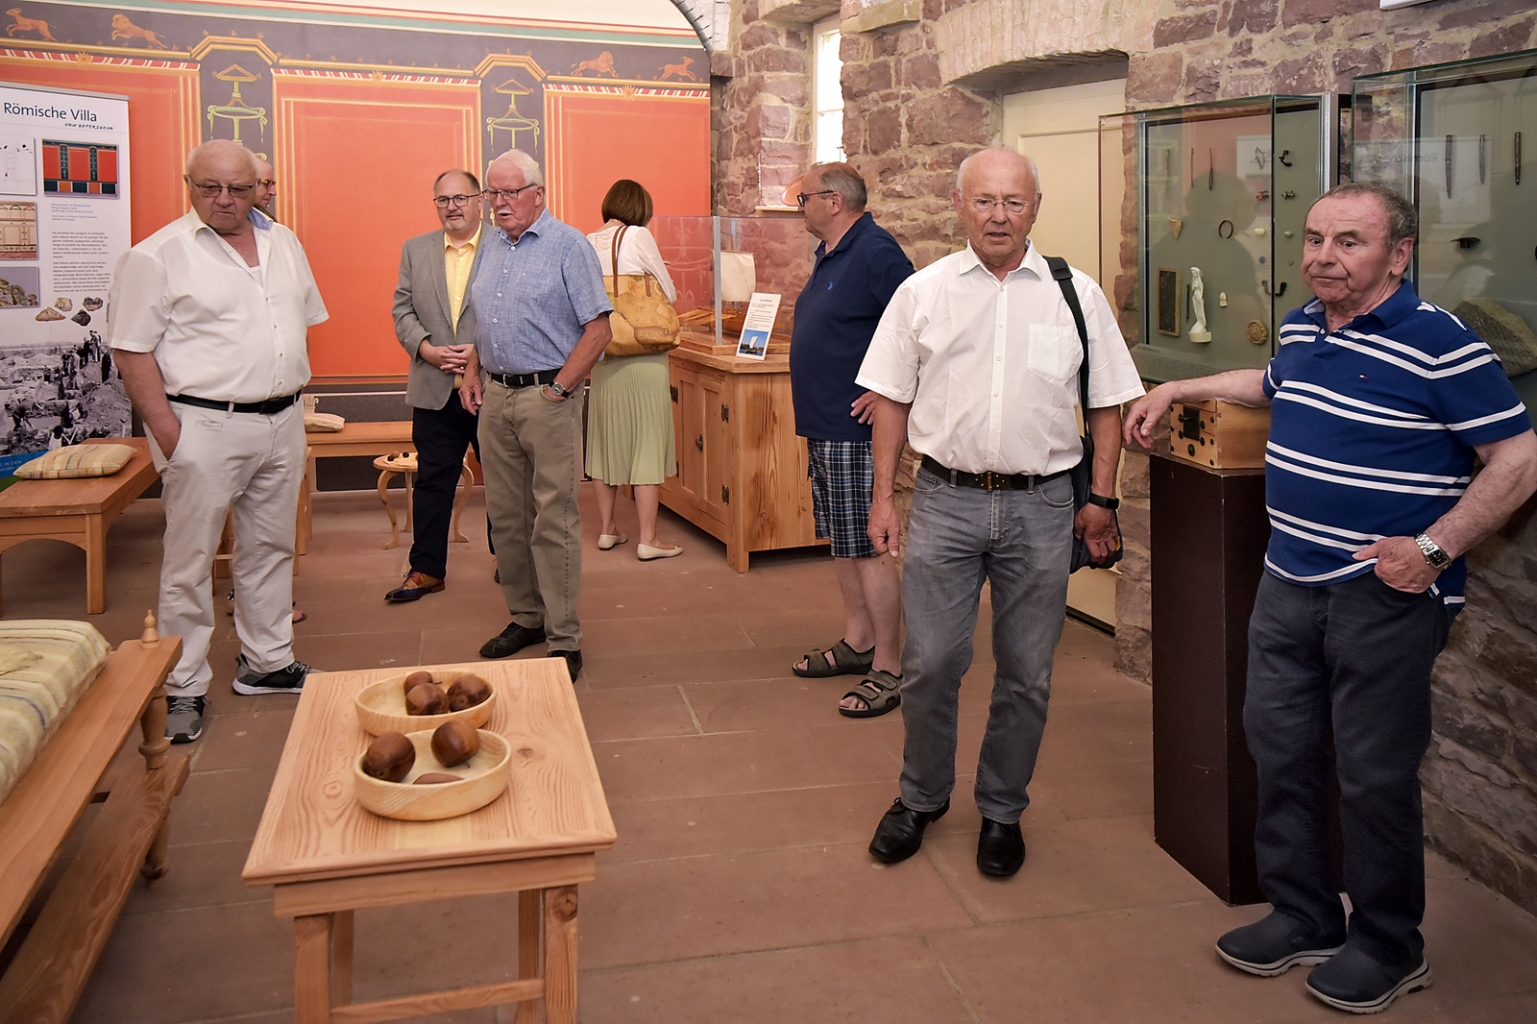 Ehrenbürger, Gemeinderäte und der Ehrenvorsitzende des HuKO schauen sich in der Römerstube um.